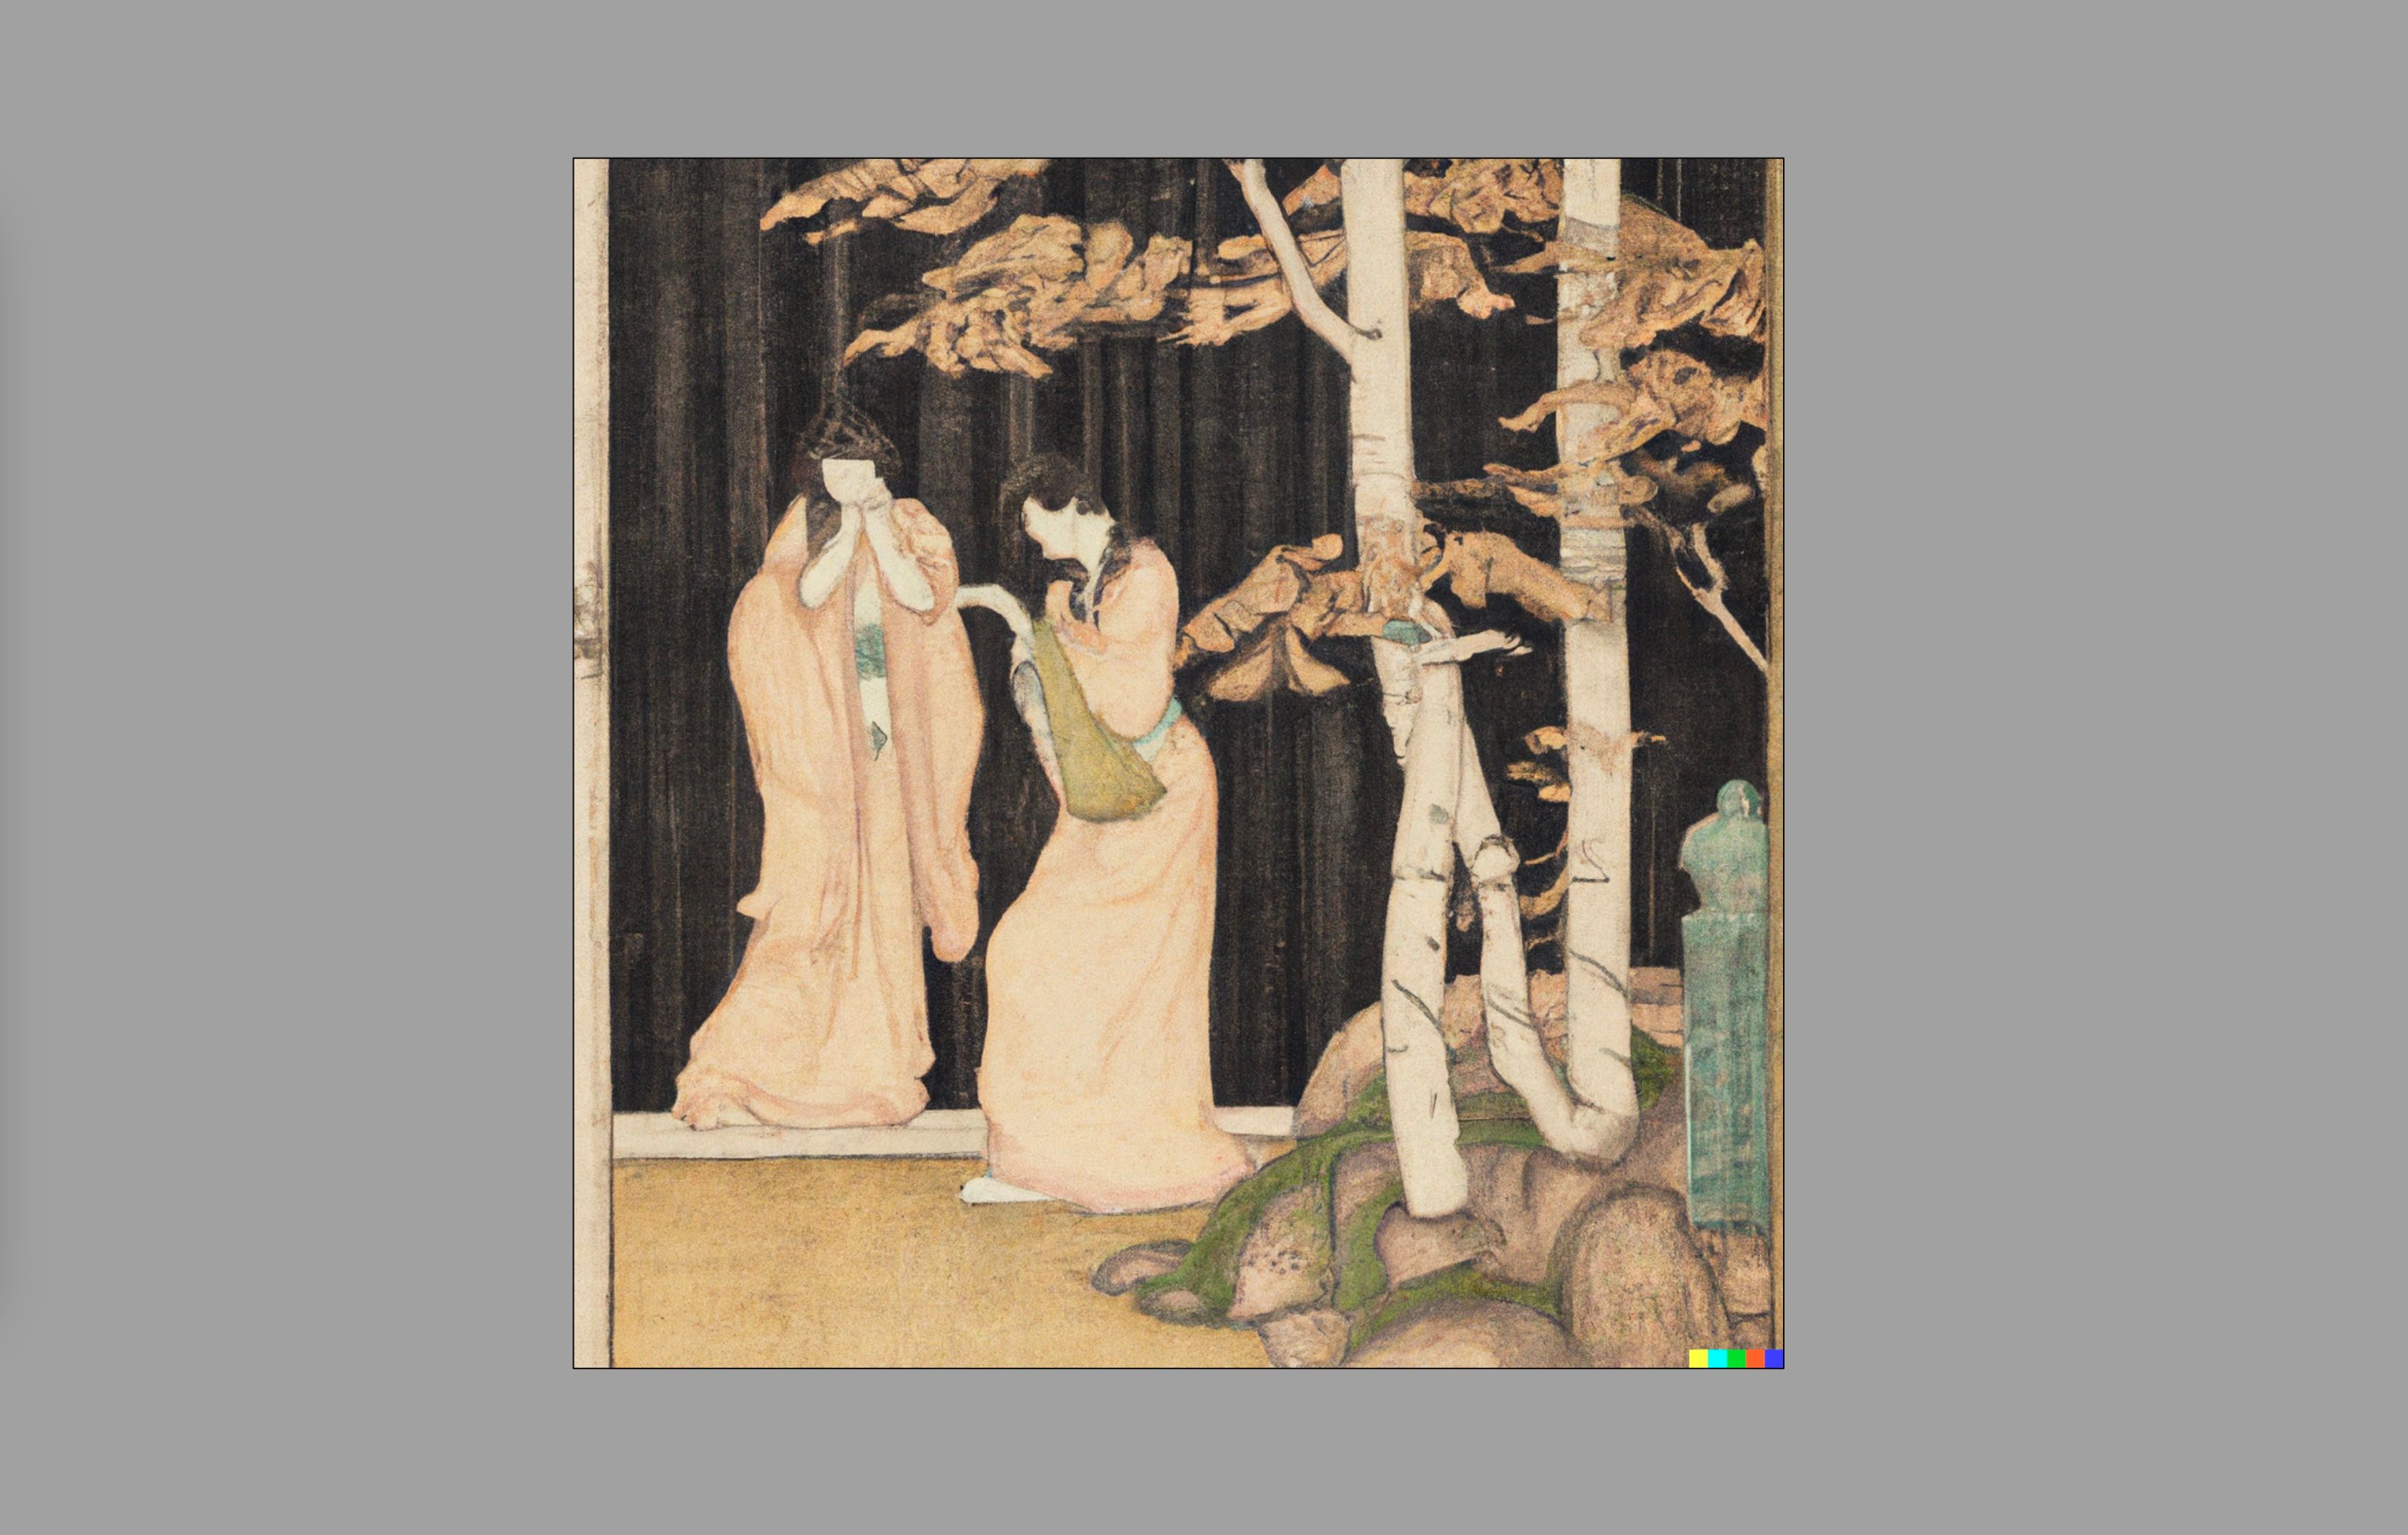 Uma imagem estilo Ukiyo-e de duas mulheres japonesas, gerada com Dall-E